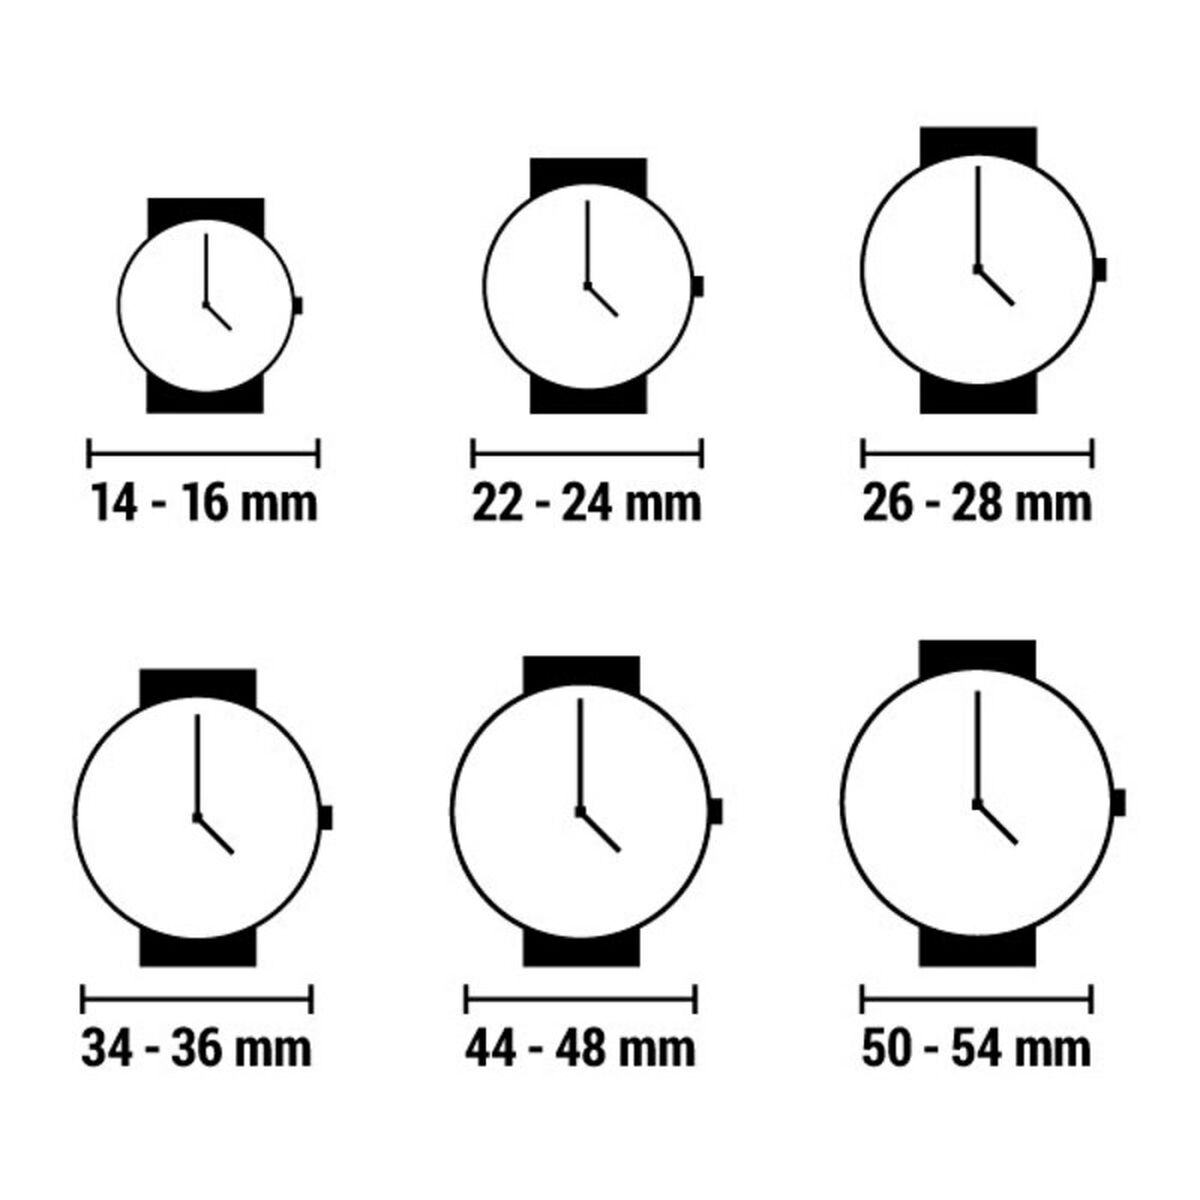 Horloge Dames Chronotech CT7896LS-92 (Ø 34 mm)